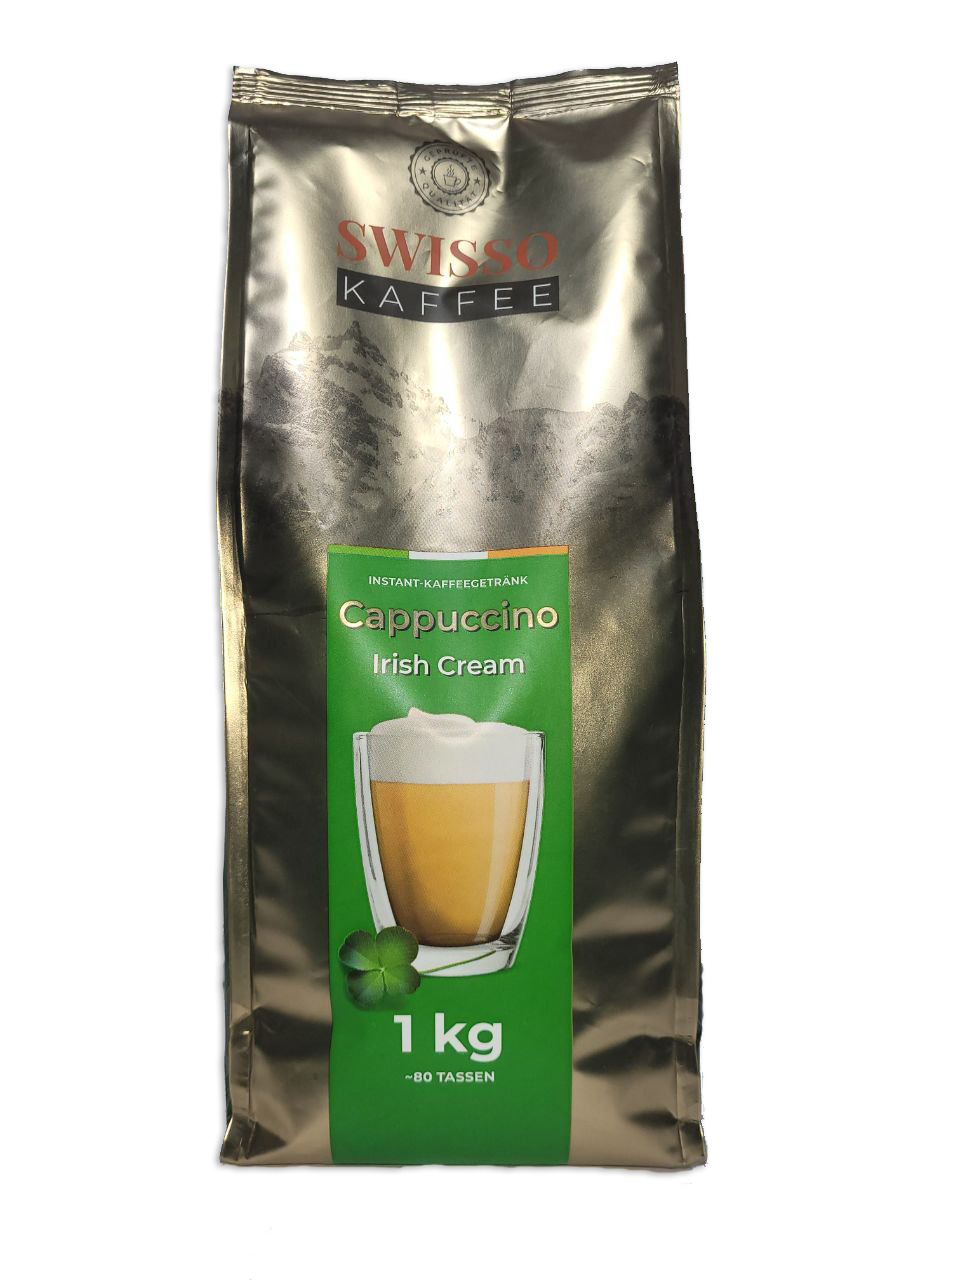  Набір Капучіно Swisso Kaffee Irish Cream 1 кг x 10 шт